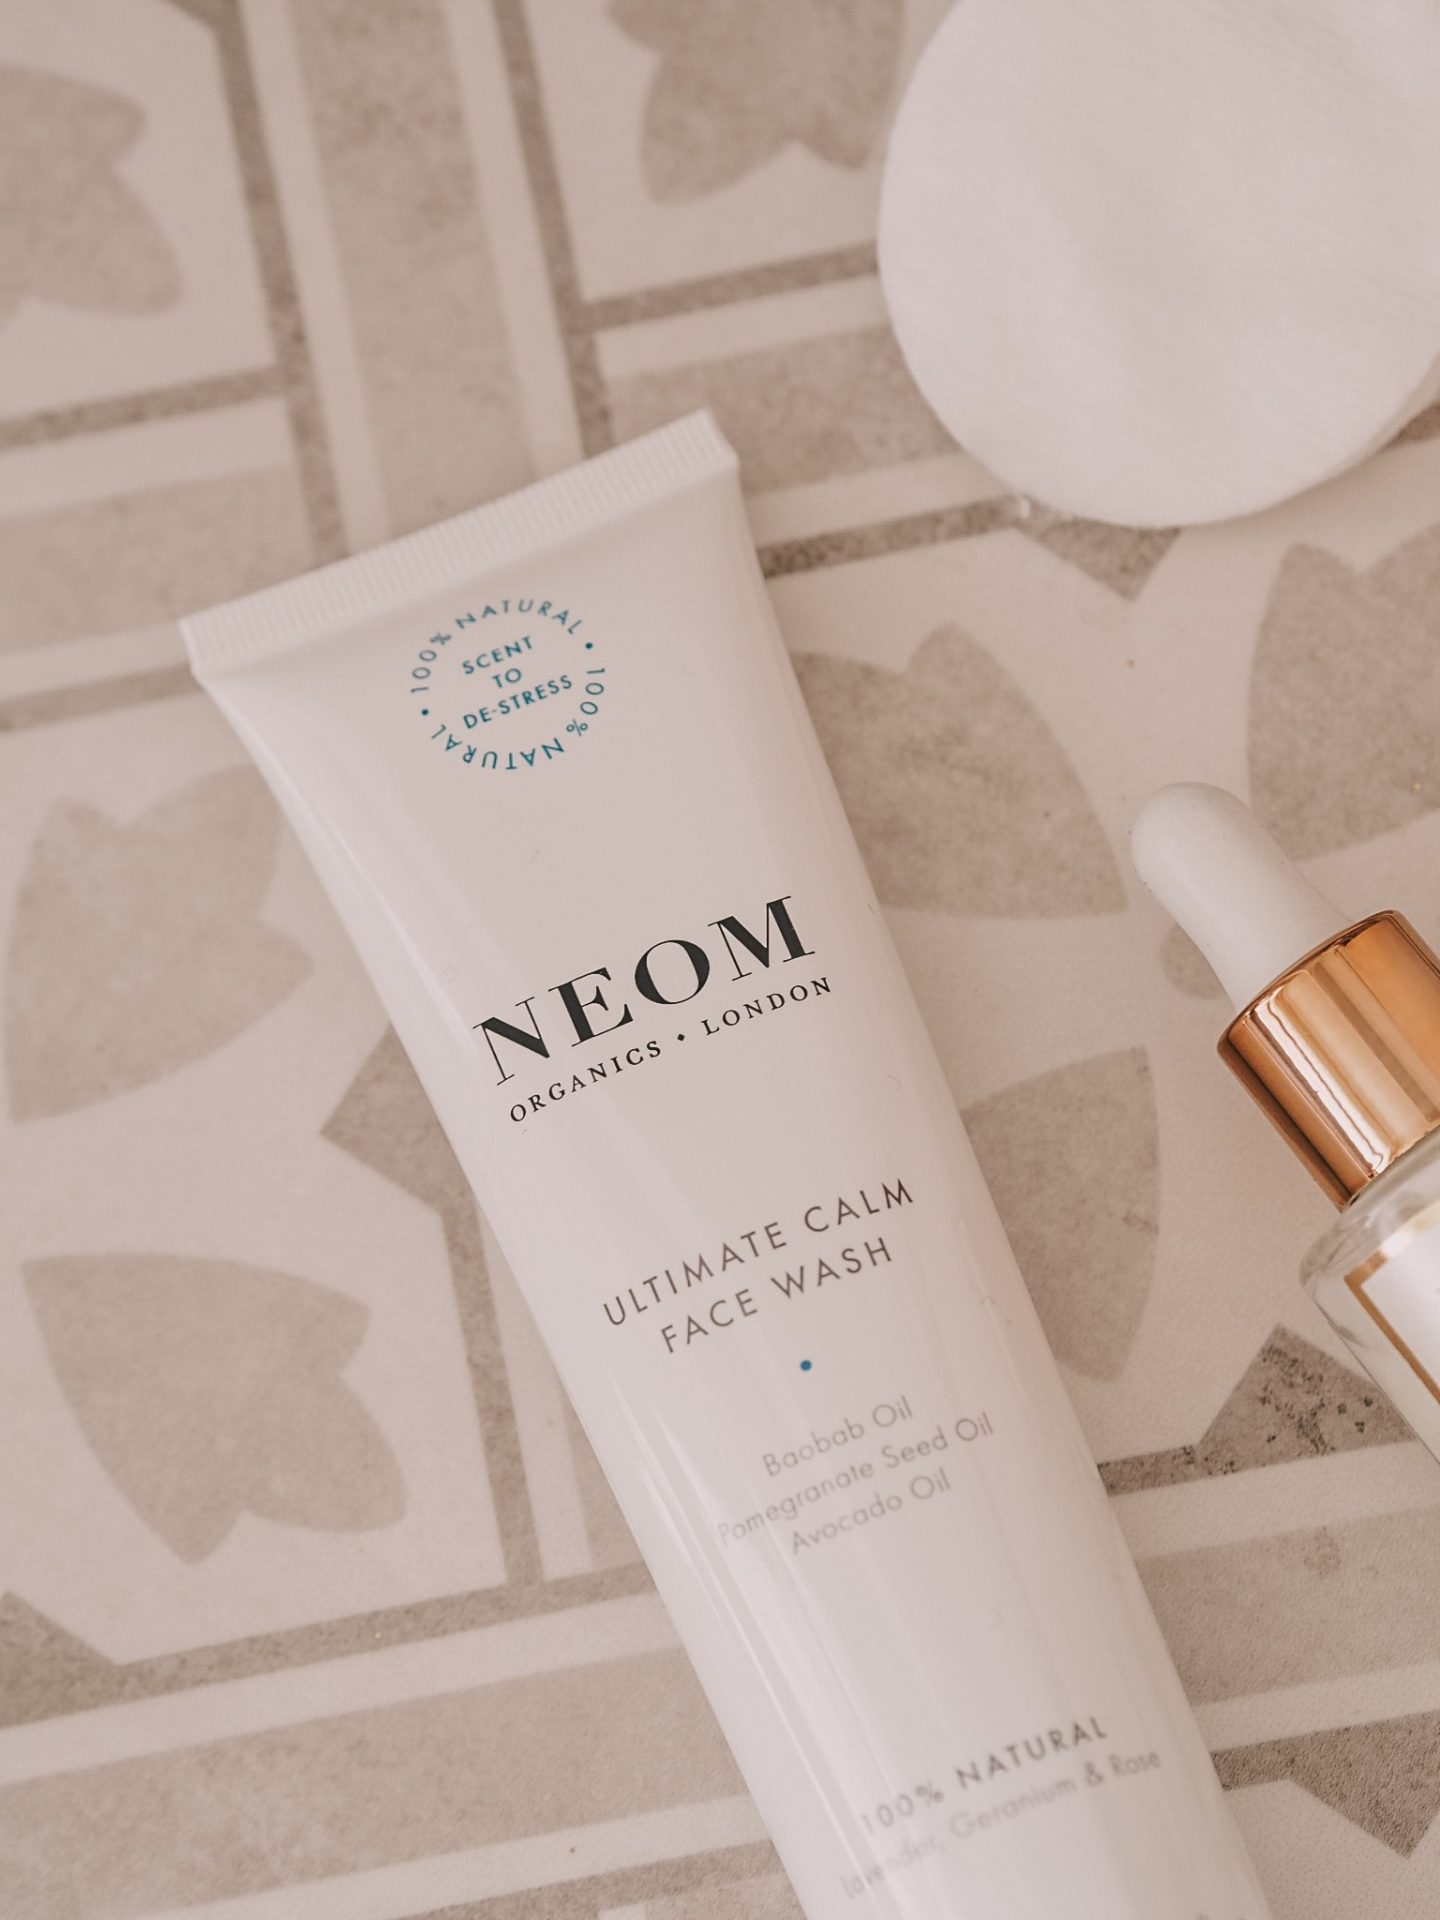 Neom Organics Ultimate Calm Skincare